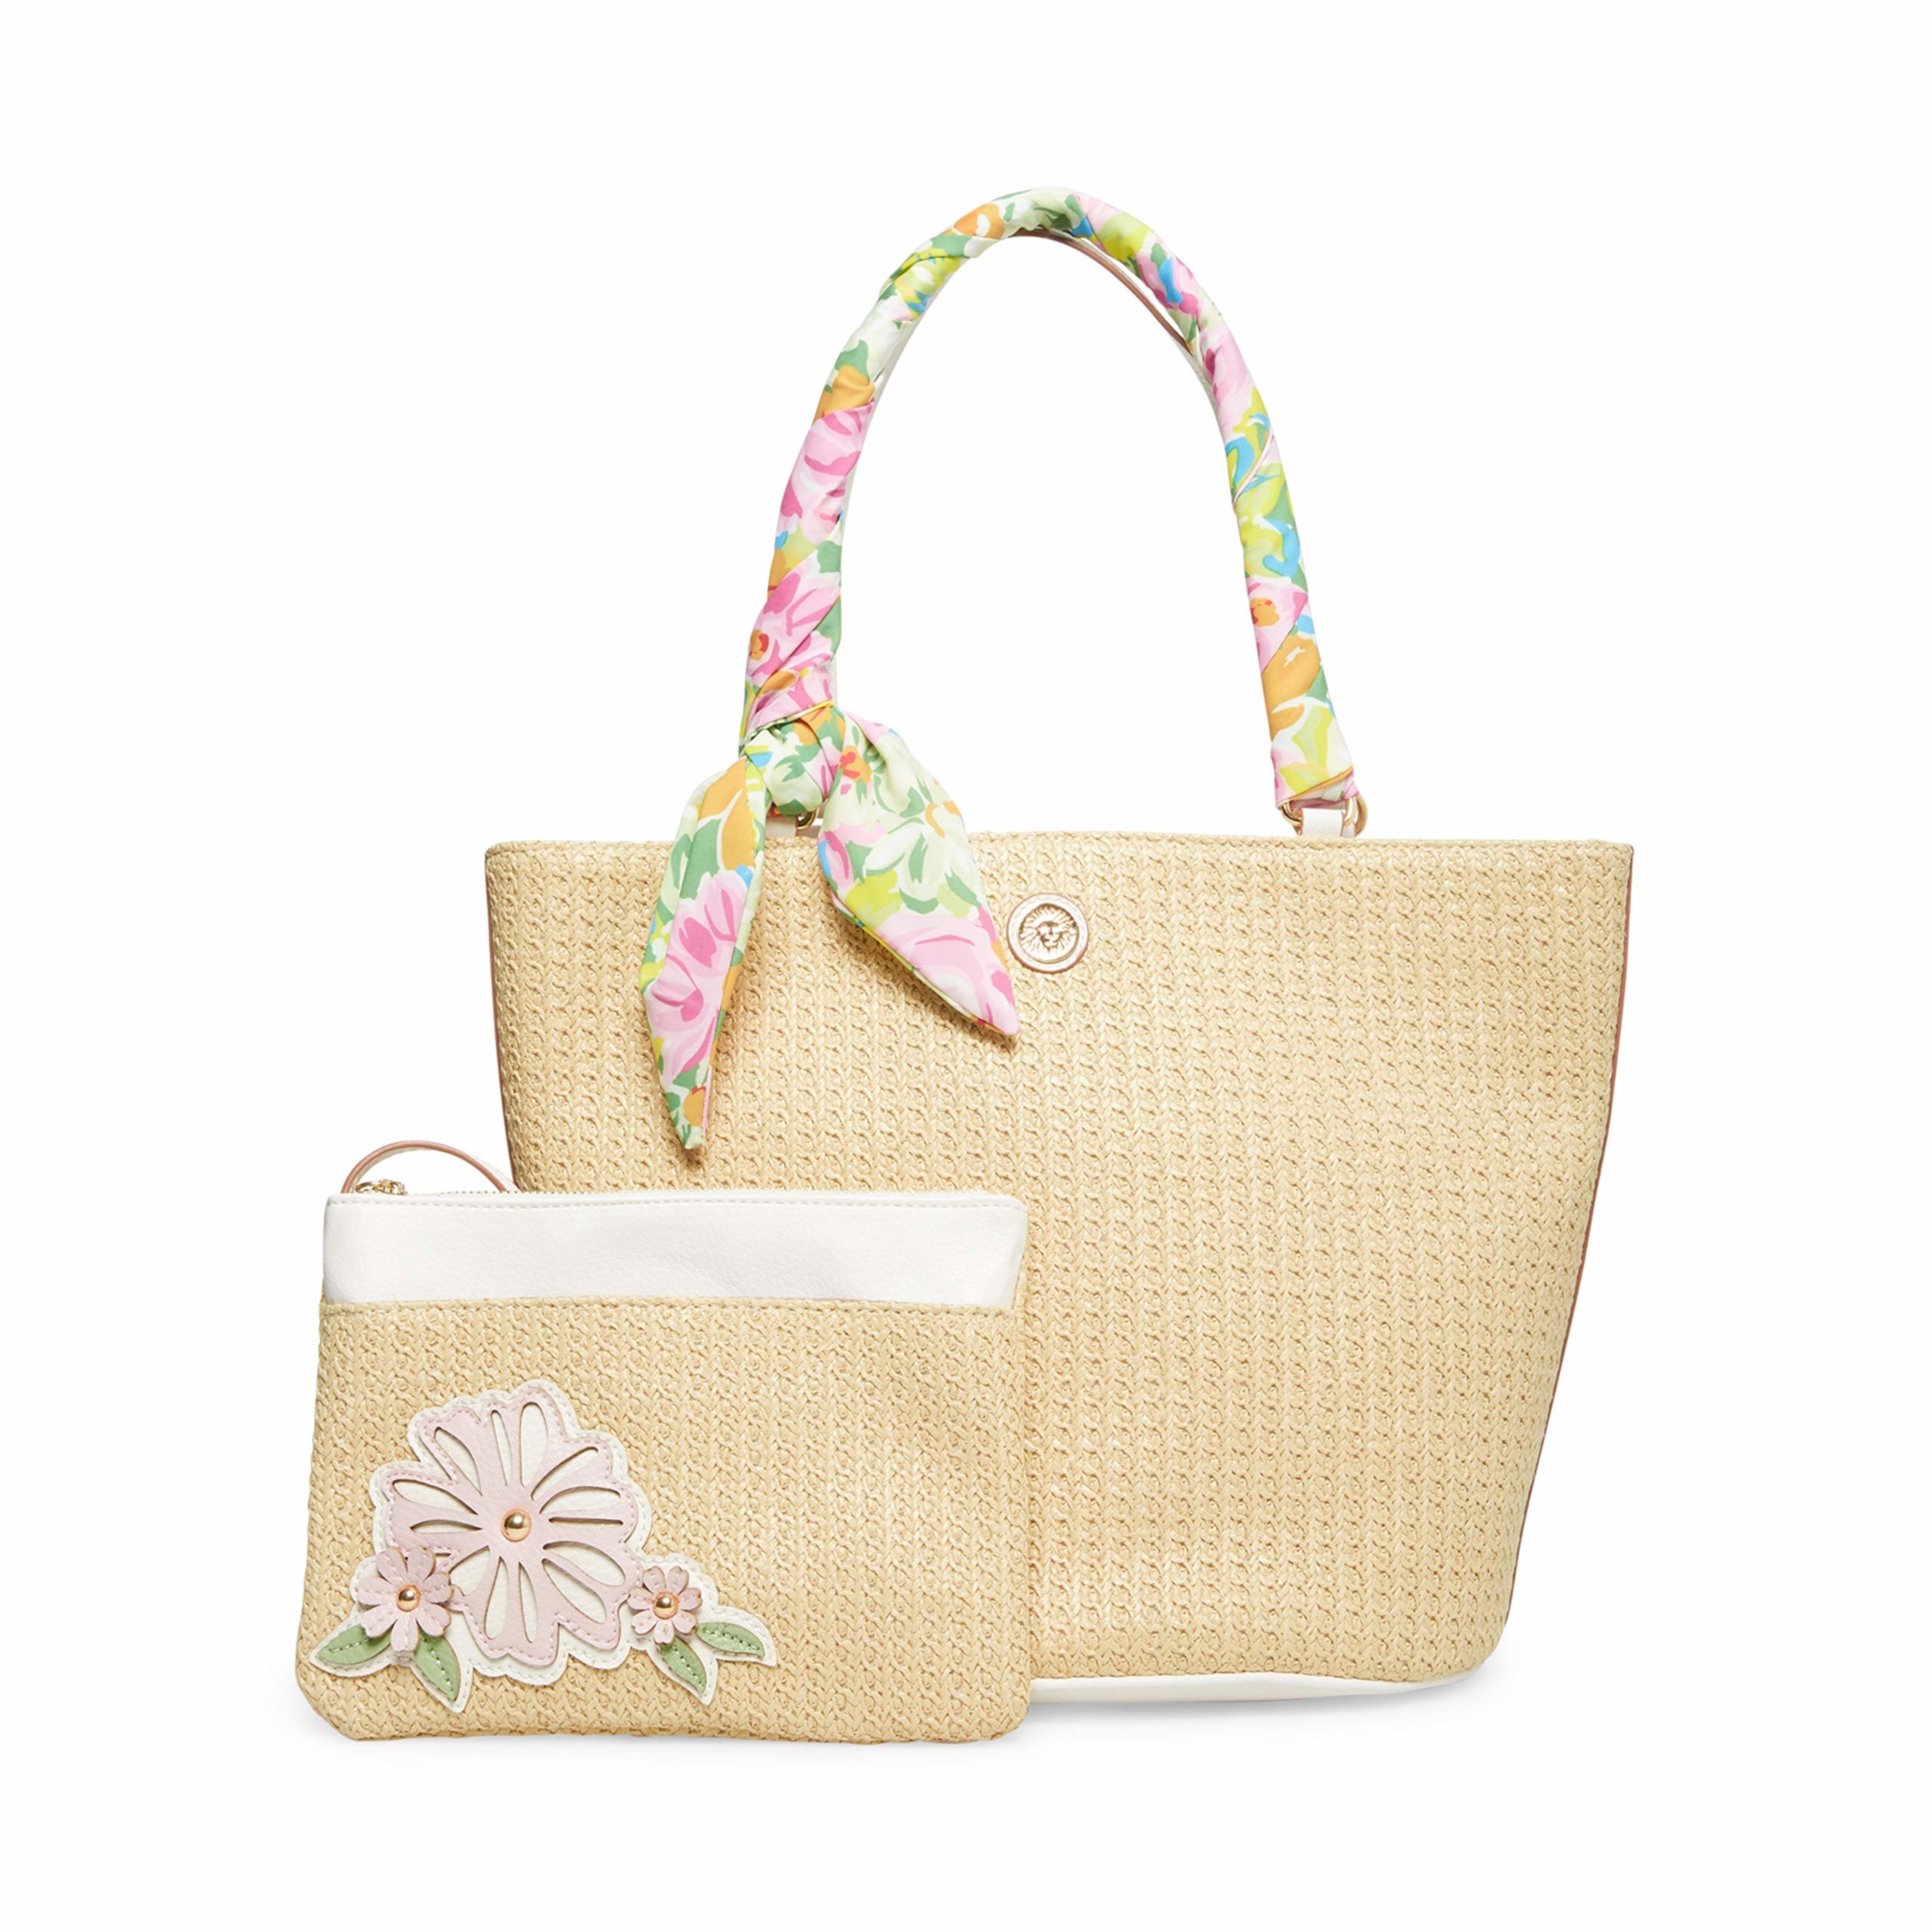 Соломенная сумка с цветочным шарфом и съемным браслетом Anne Klein